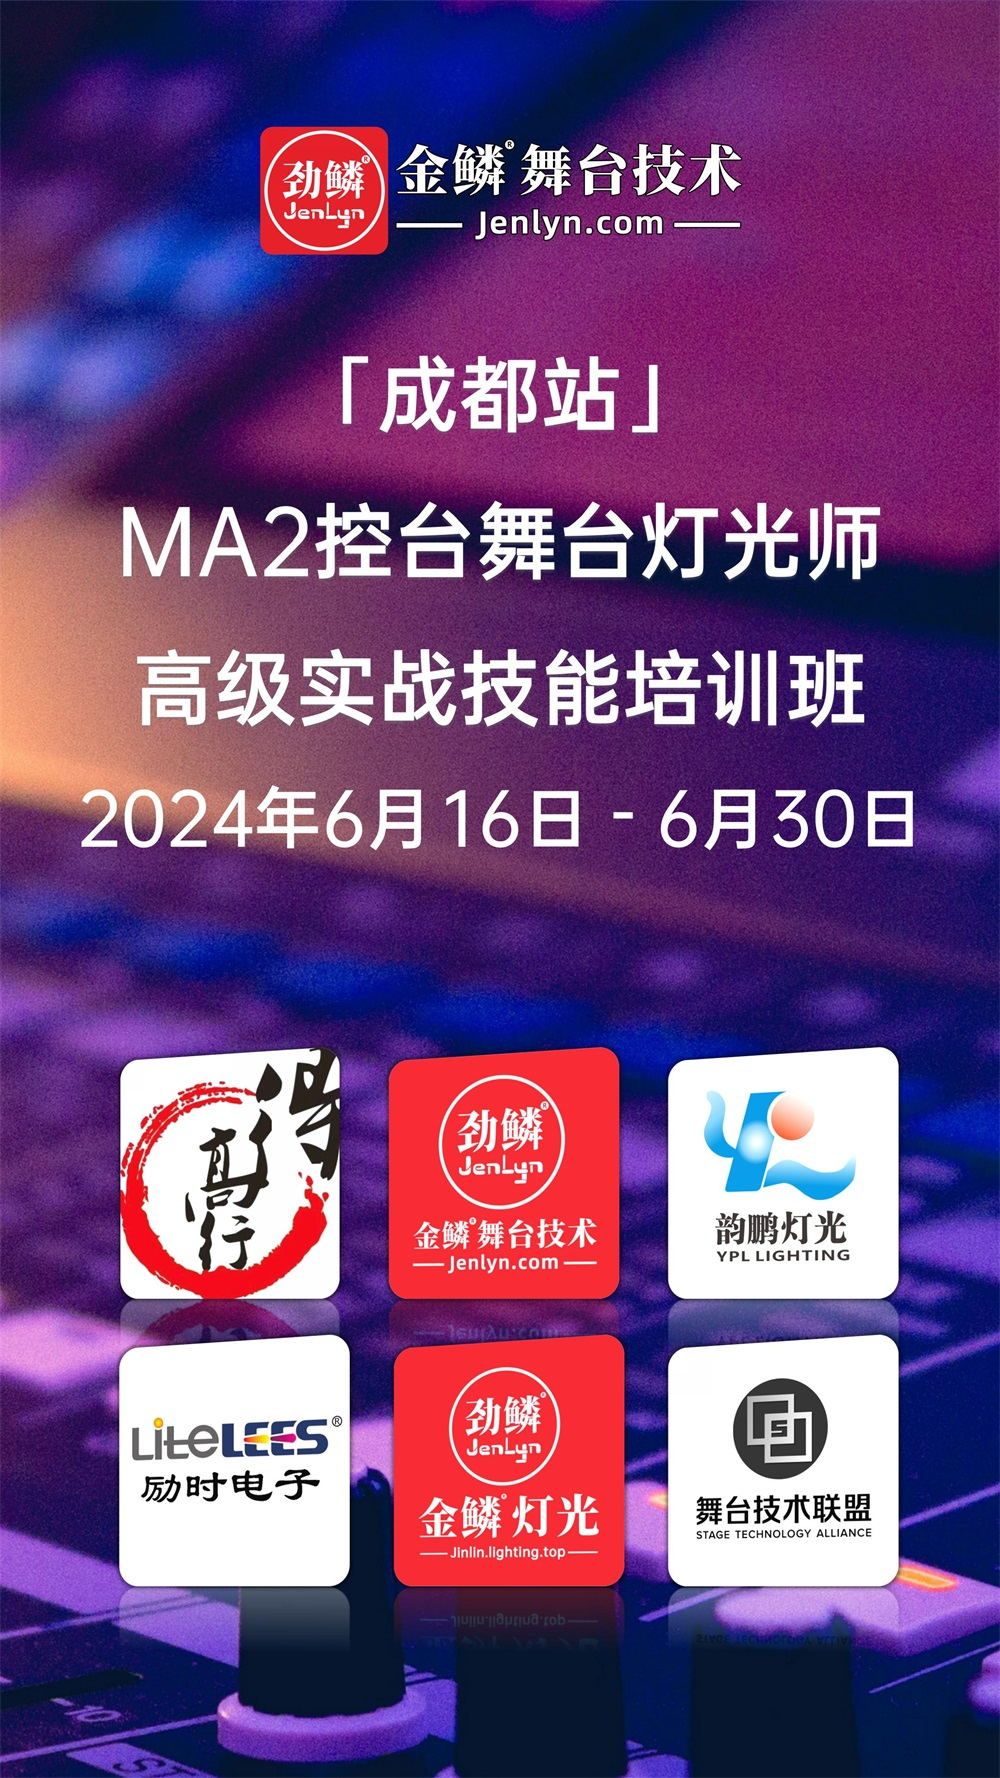 2024年6月16日“成都站”MA2控台高级实操技术培训班开课